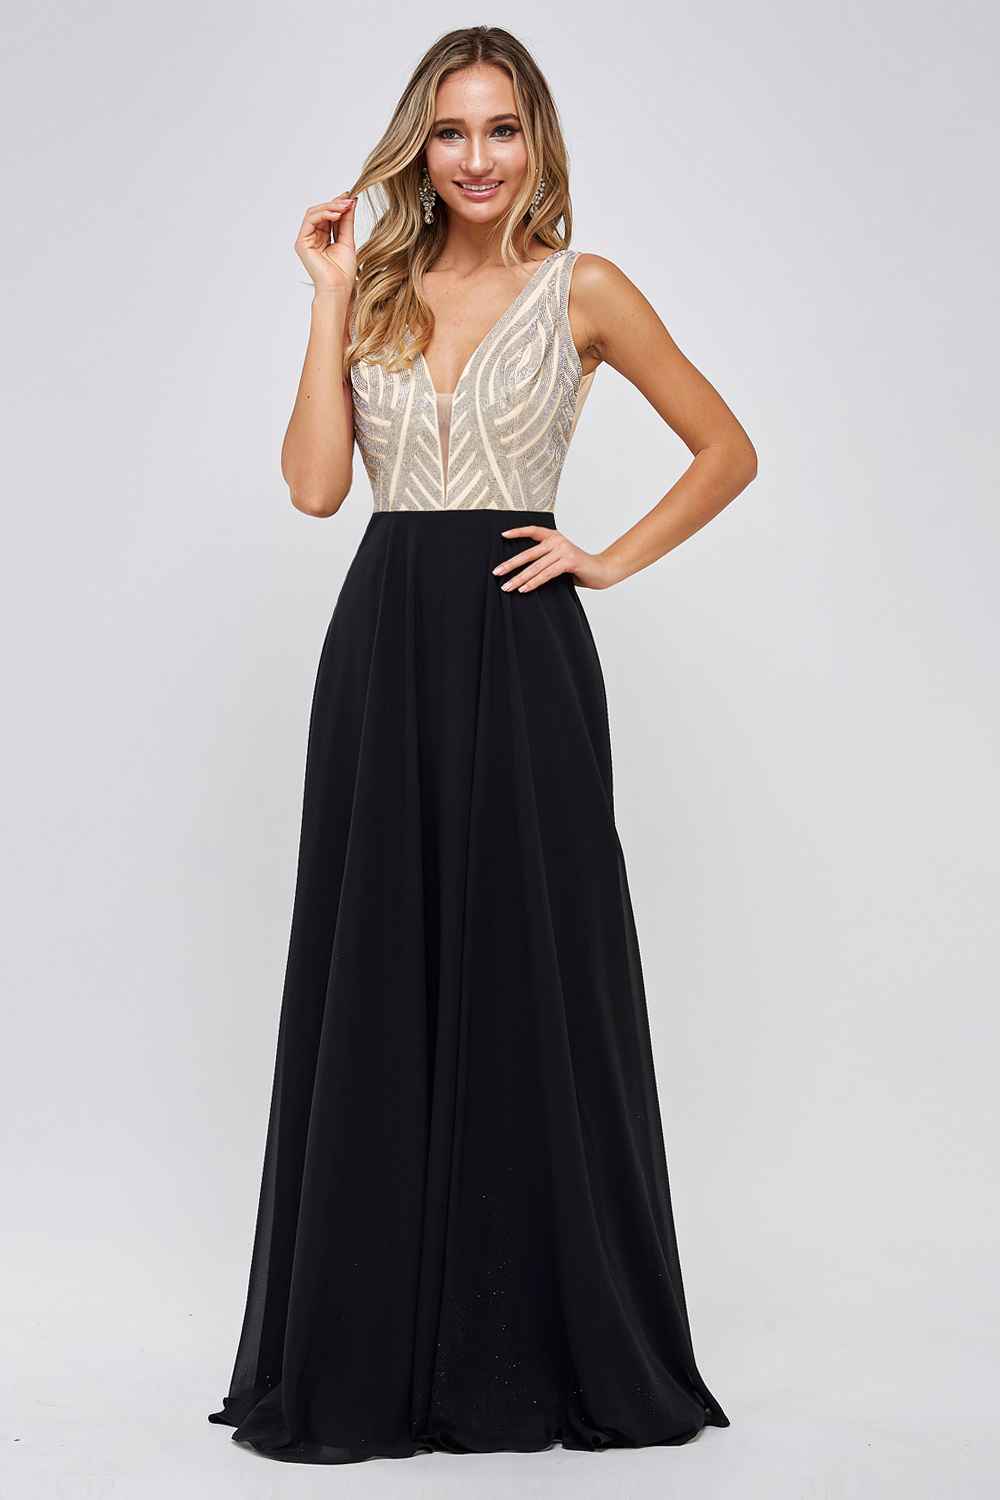 MF2145 Prom Dress Black